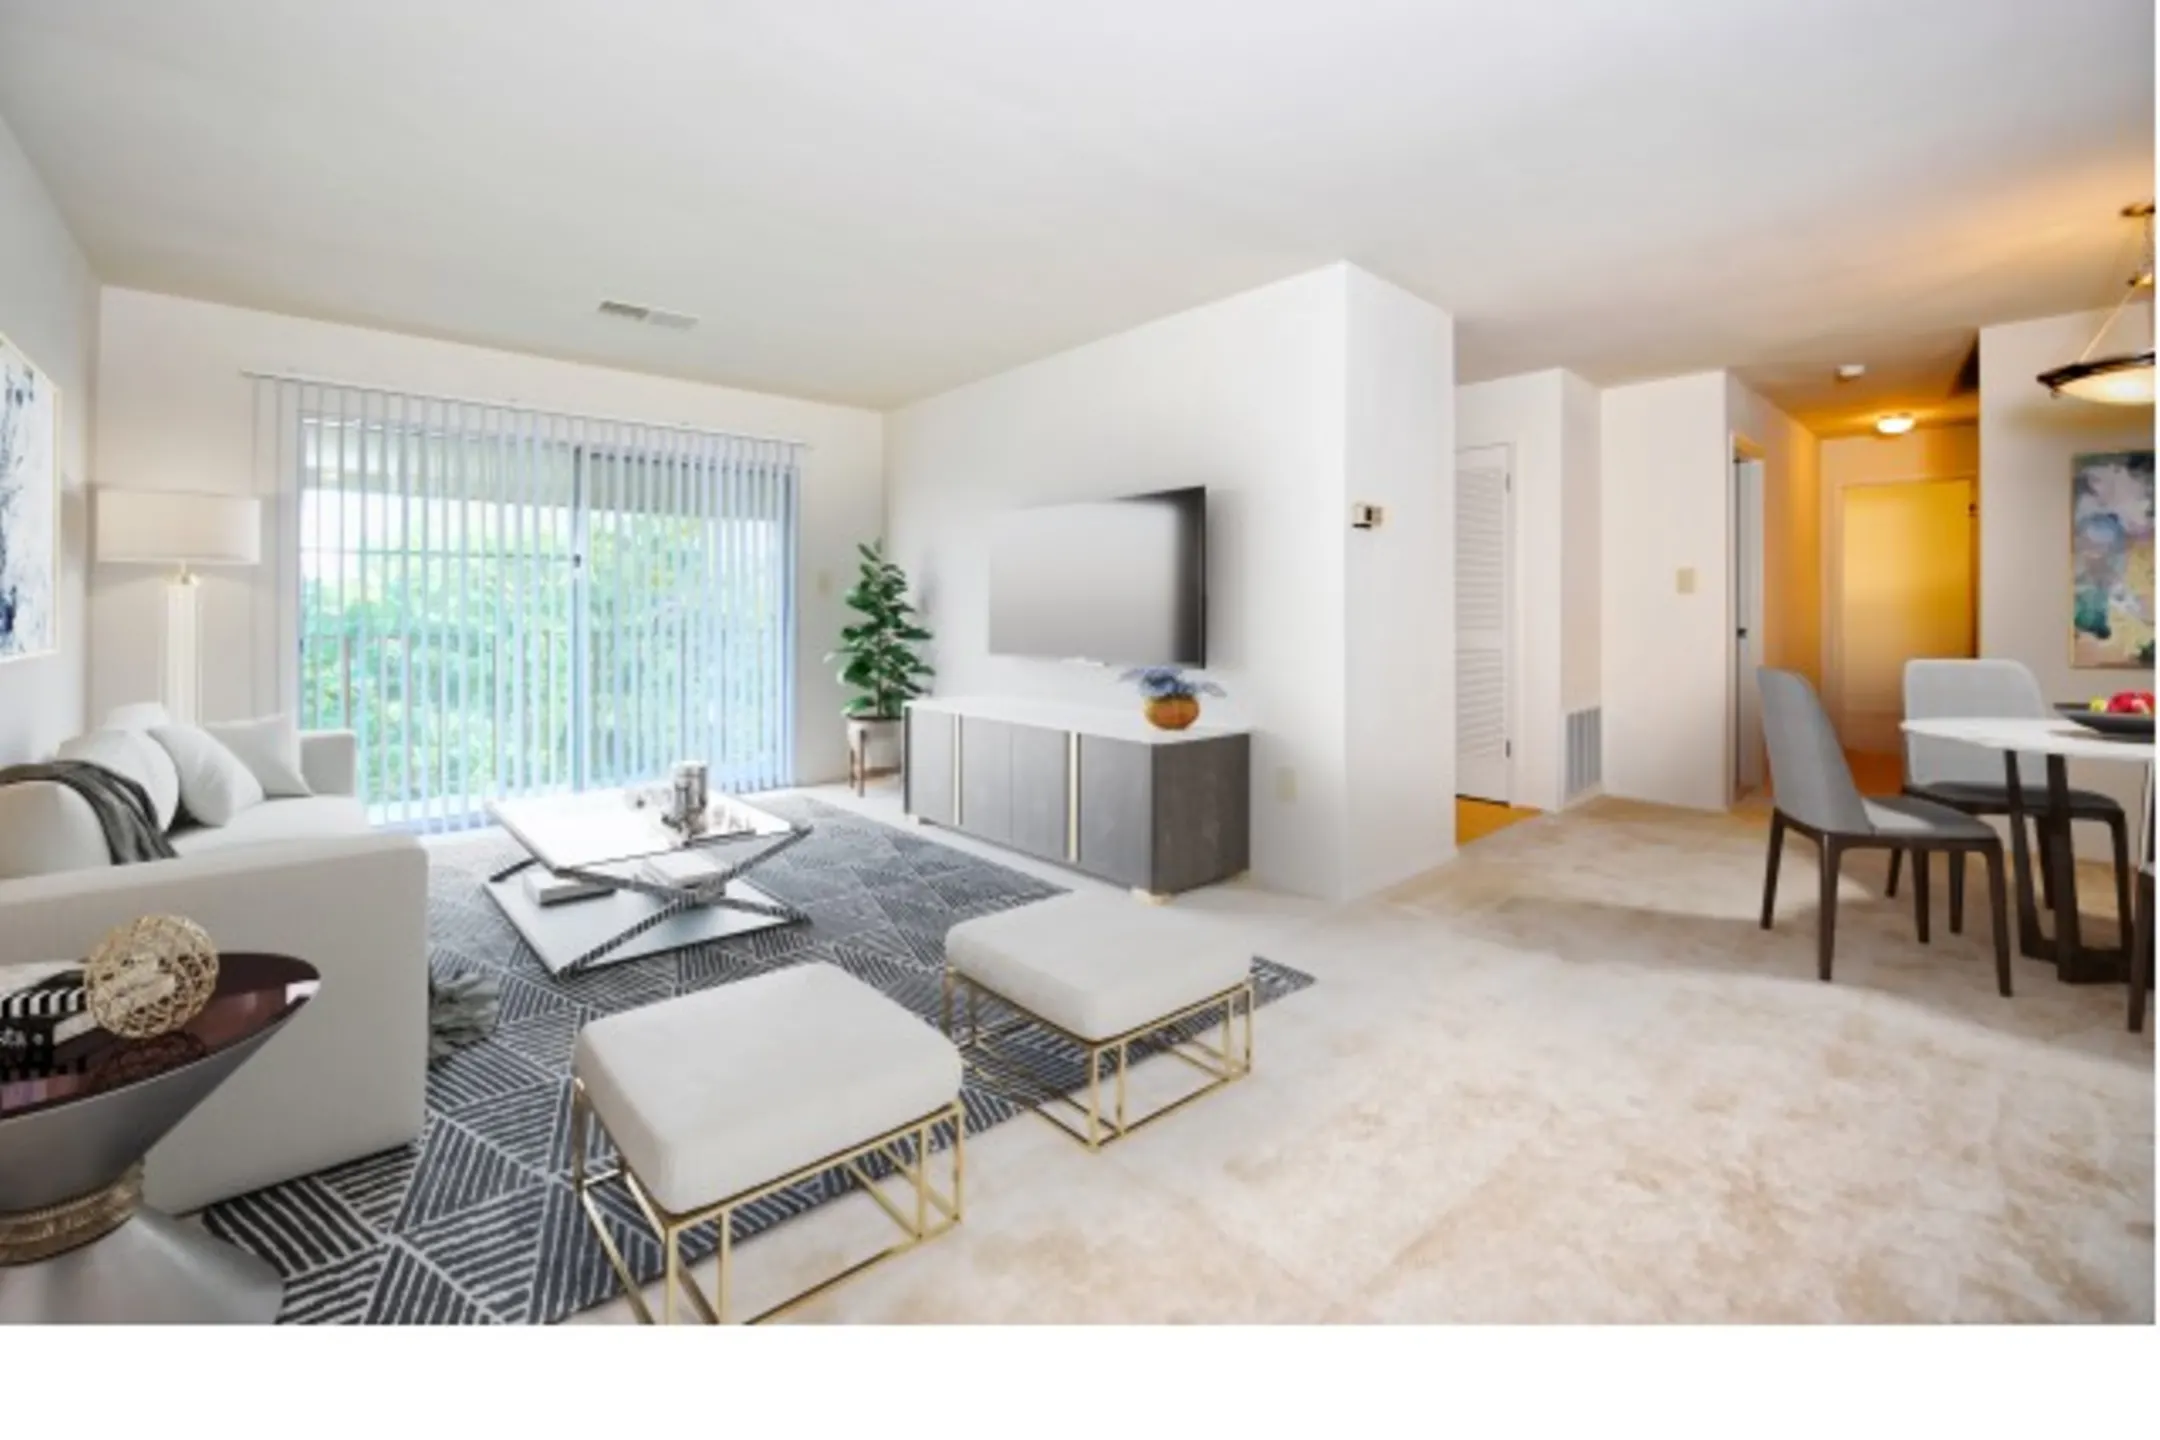 Living Room - Belmont Park - Gwynn Oak, MD